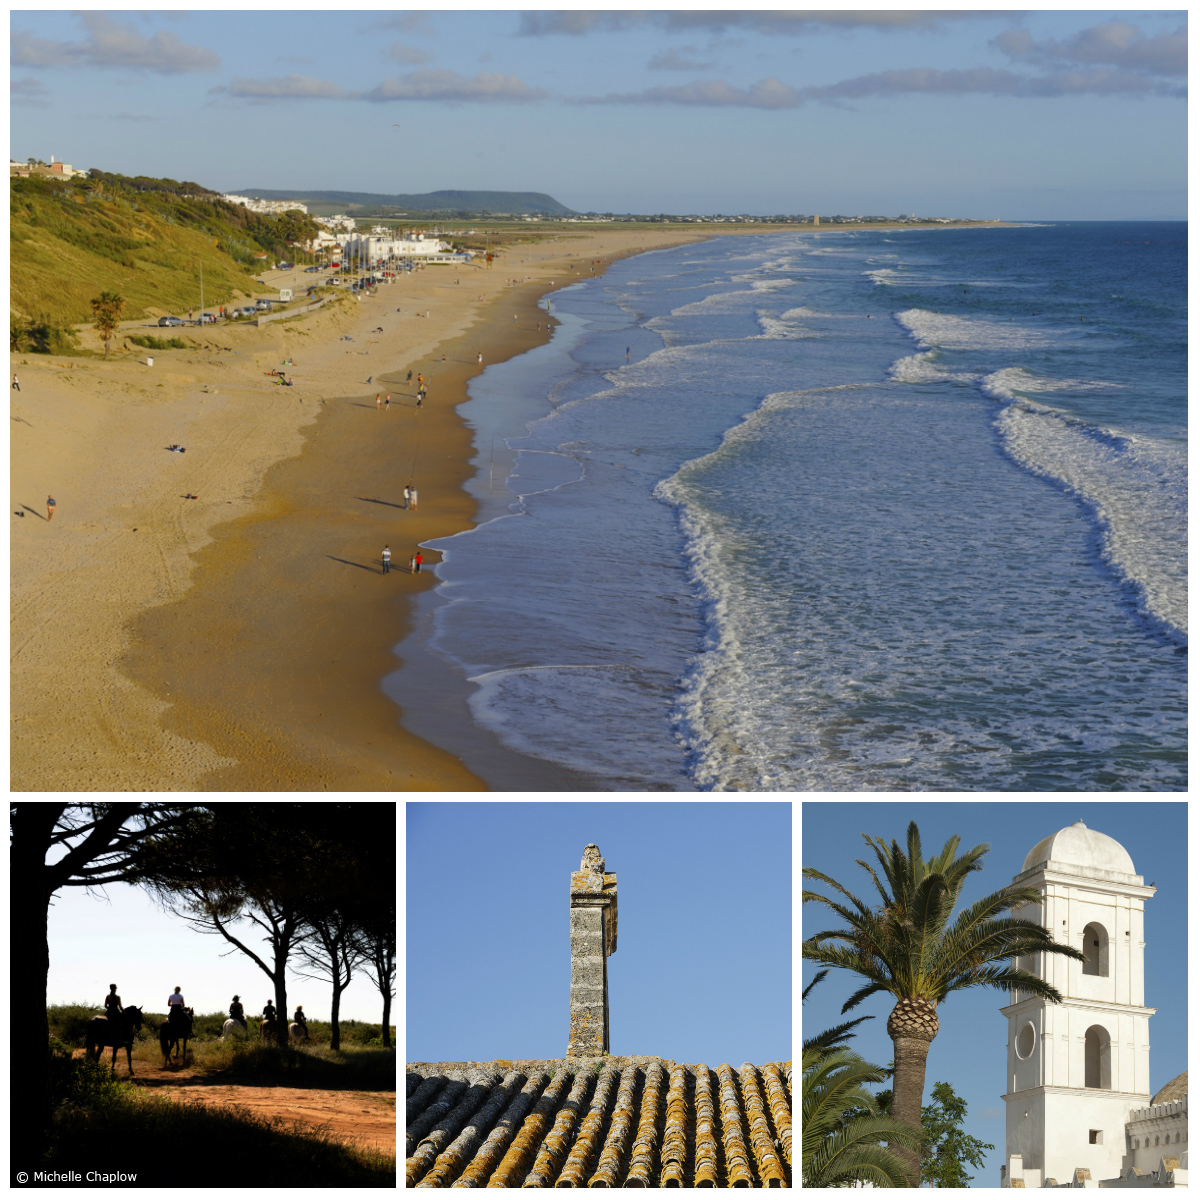 Conil de la Frontera - Official Andalusia tourism website